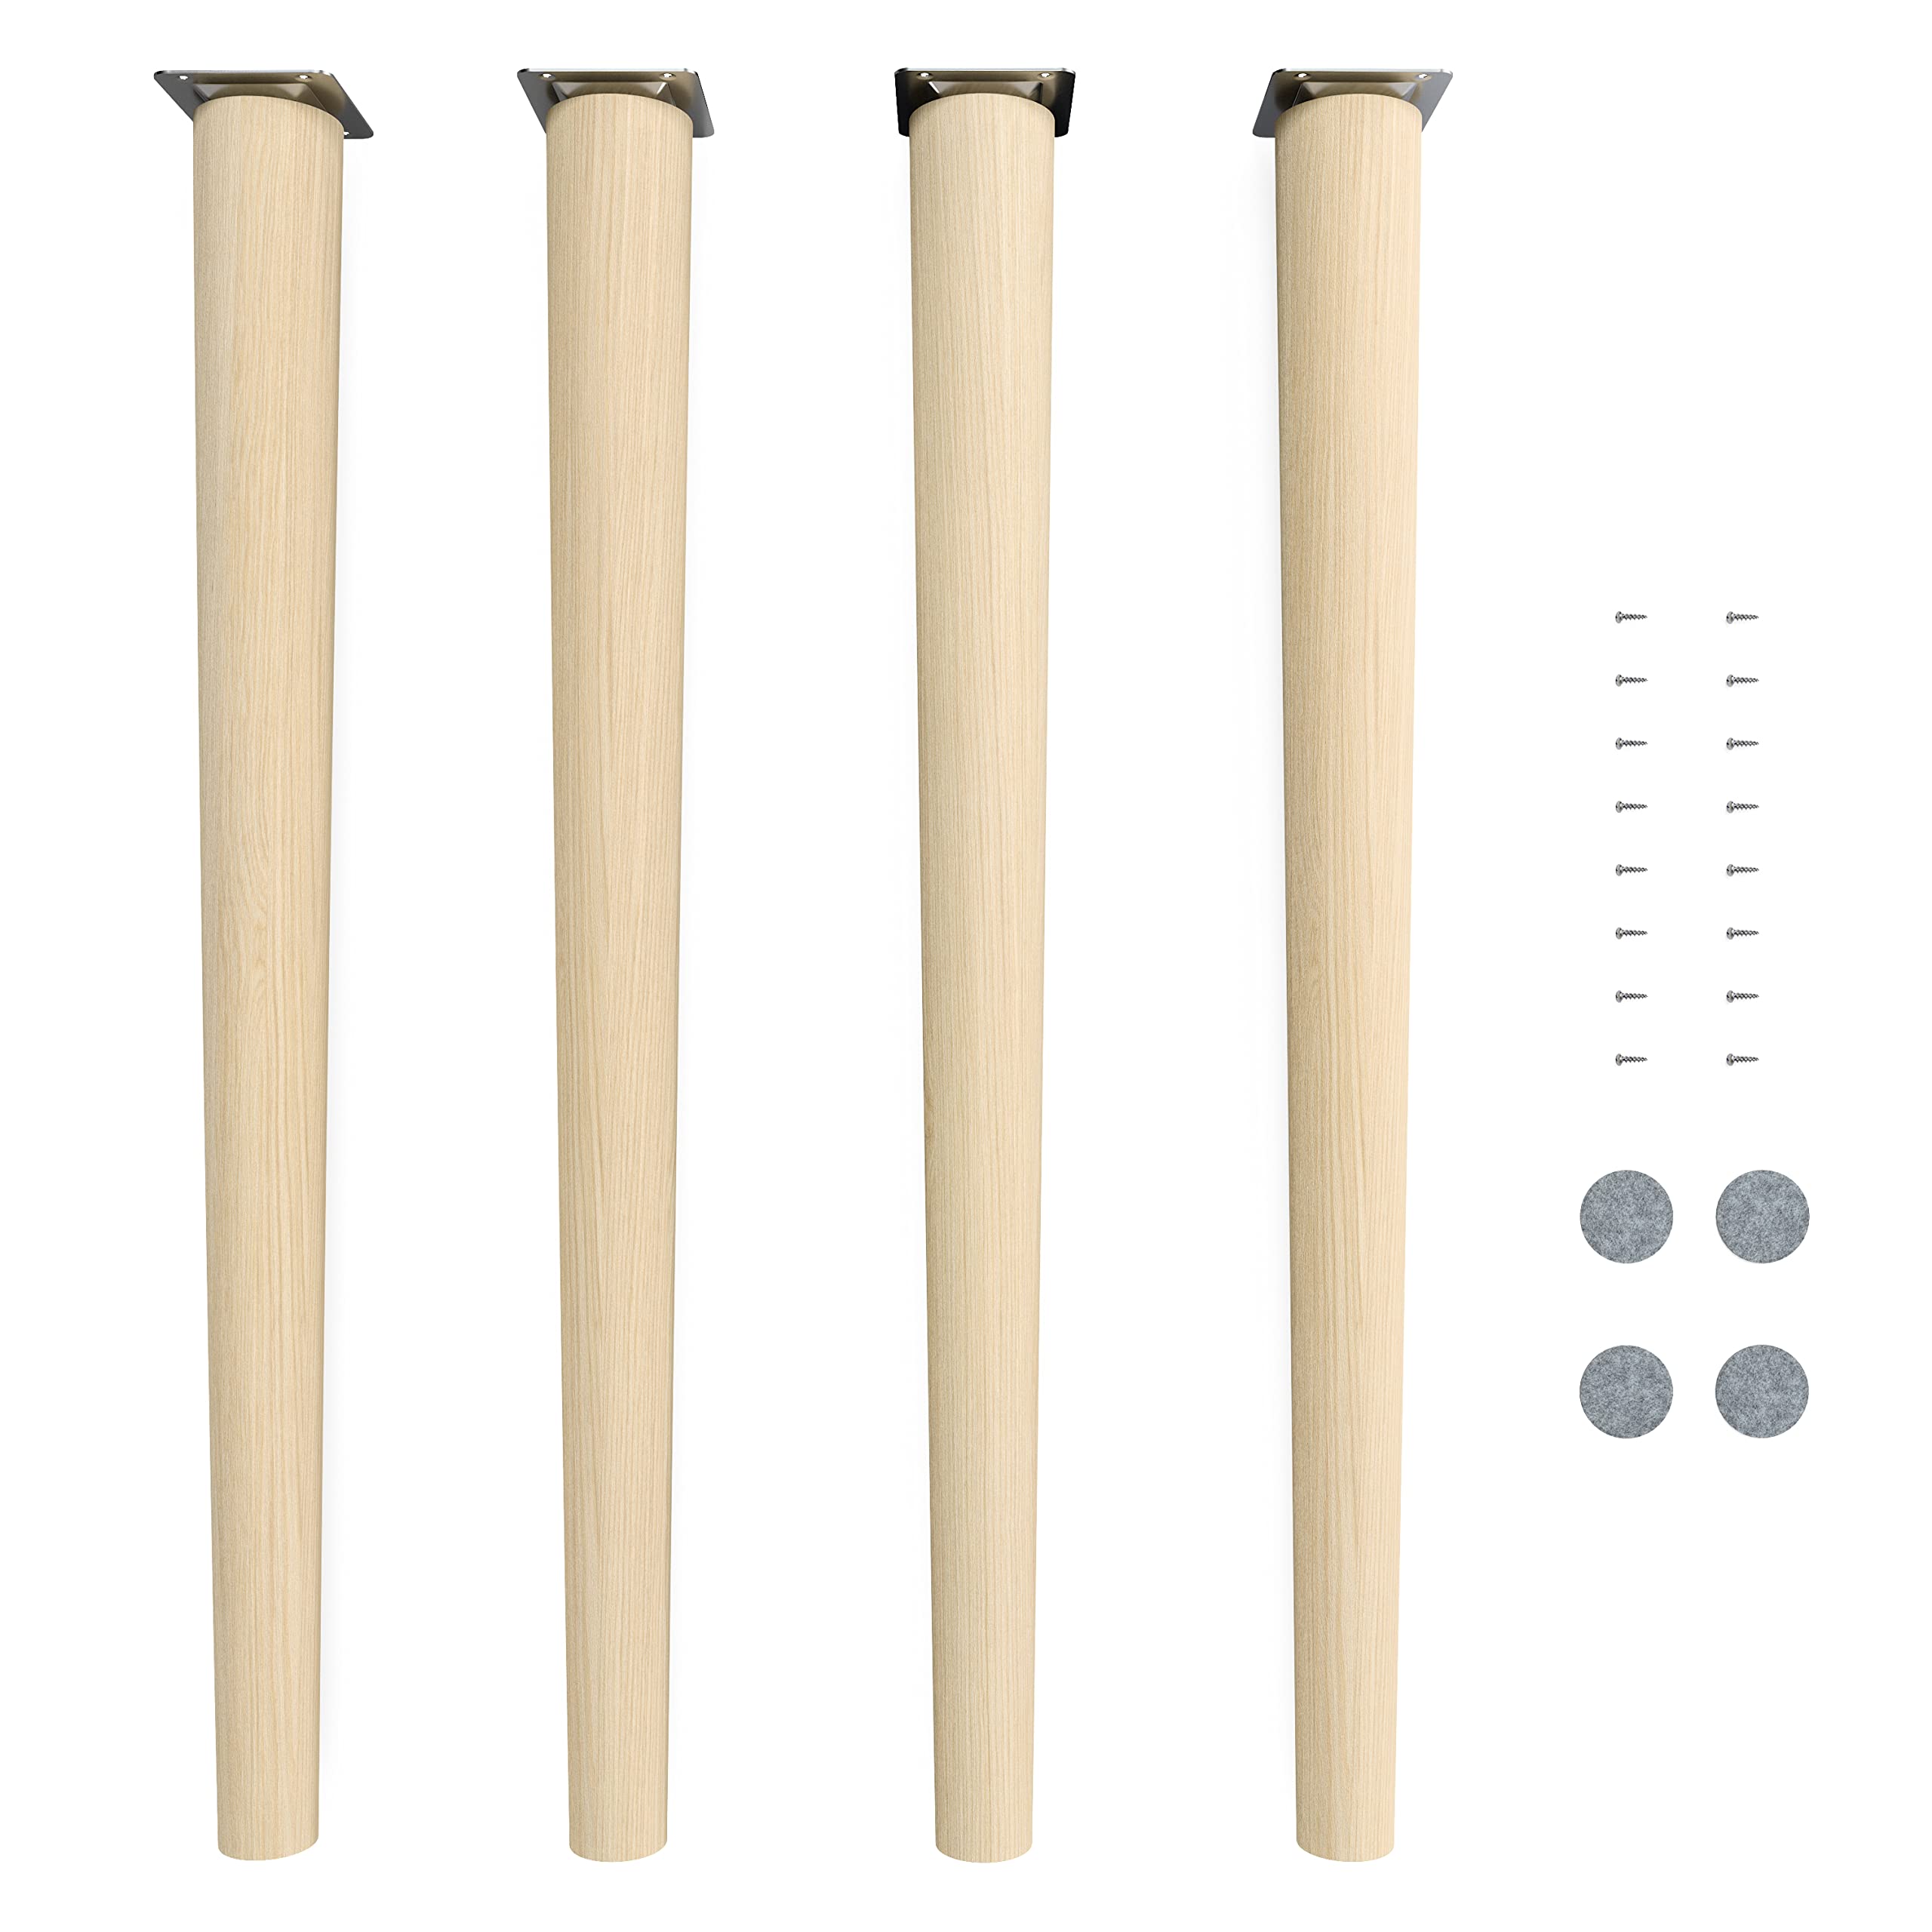 sossai® Holz-Tischbeine - Clif Round | Natur (unbehandelt) | Höhe: 71 cm | HMF1 | rund, konisch (gerade Ausführung) | Material: Massivholz (Buche) | für Tische, Beistelltische, Schminktische